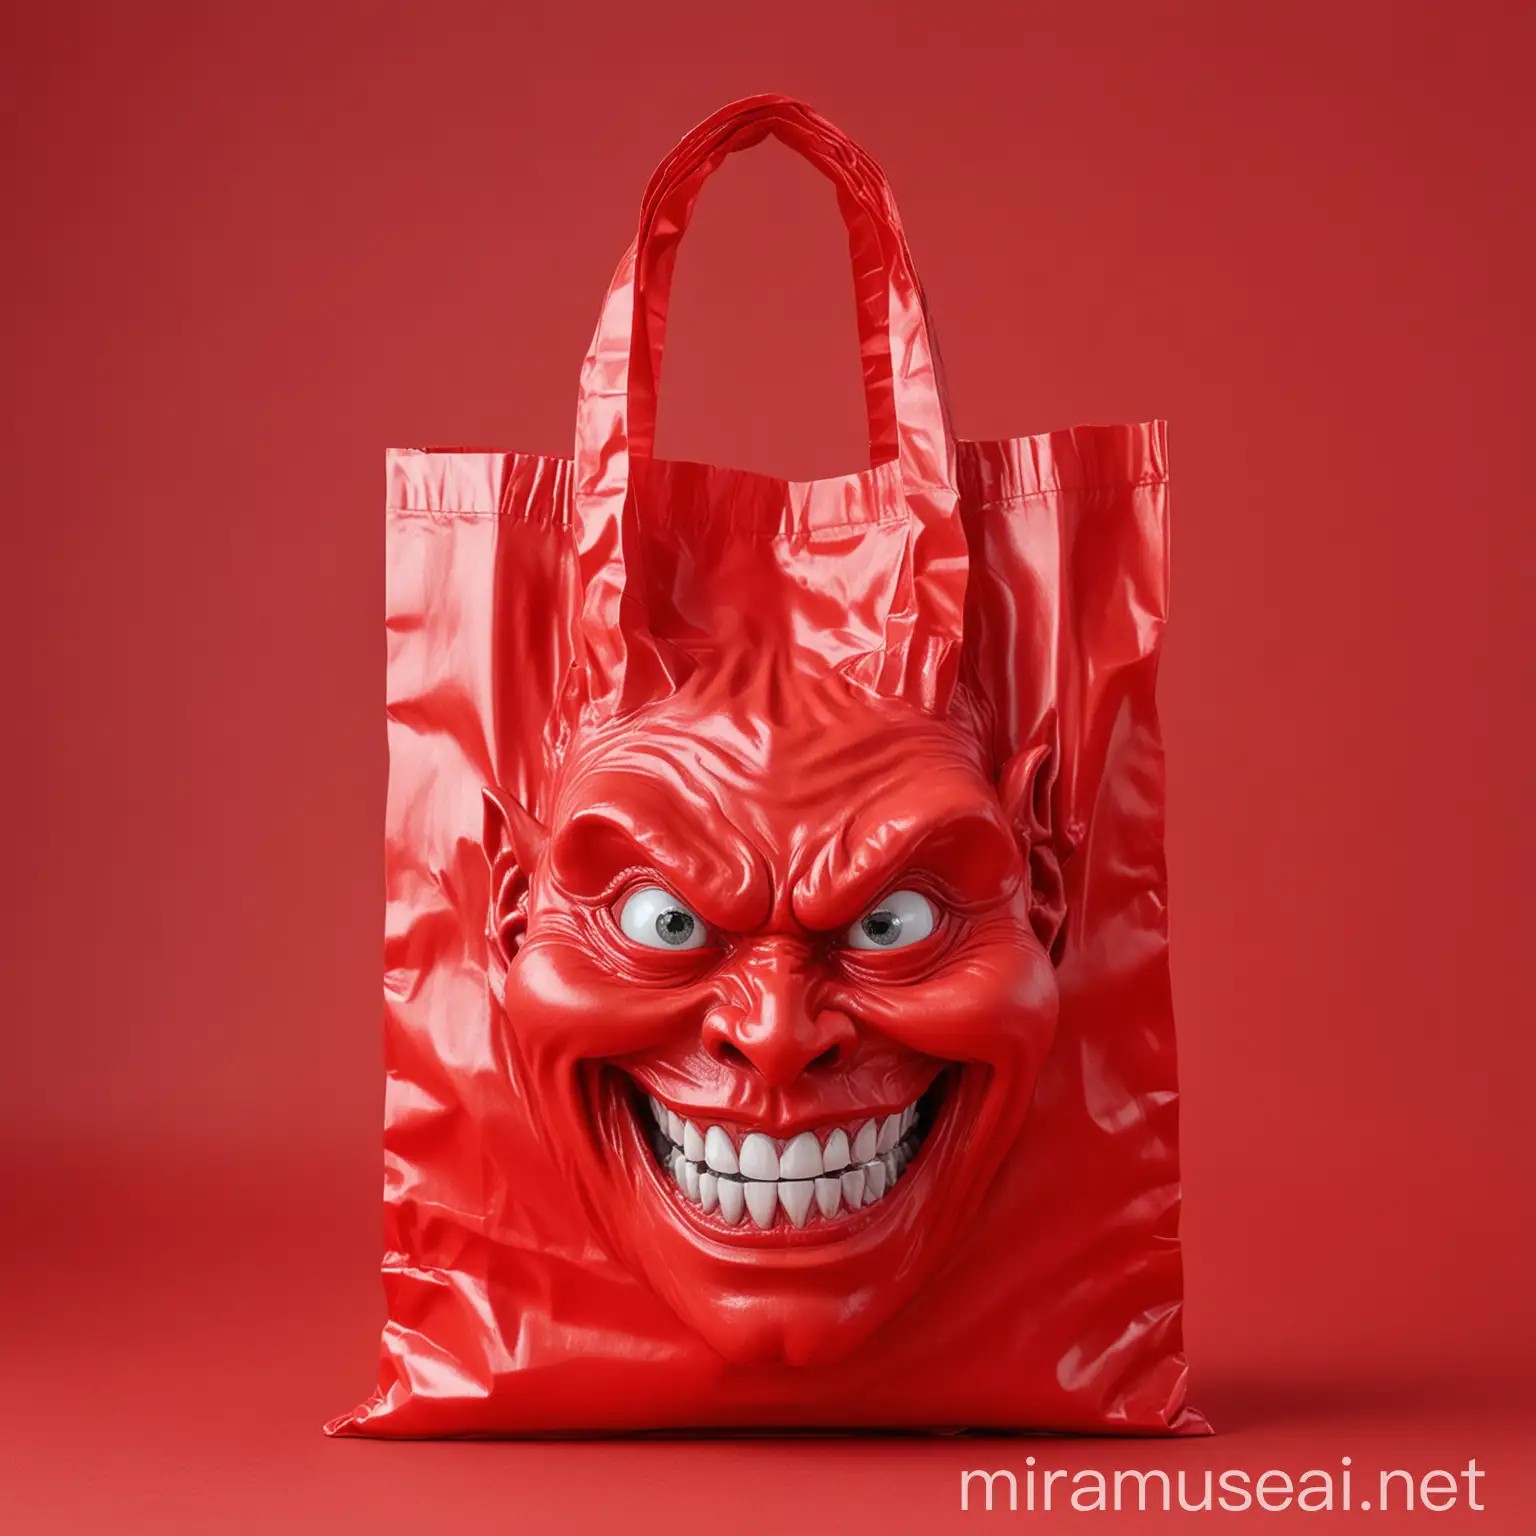 j'aimerais une photo réaliste d'un sachet en plastique rouge avec une tête de diable souriante imprimée sur le fond rouge